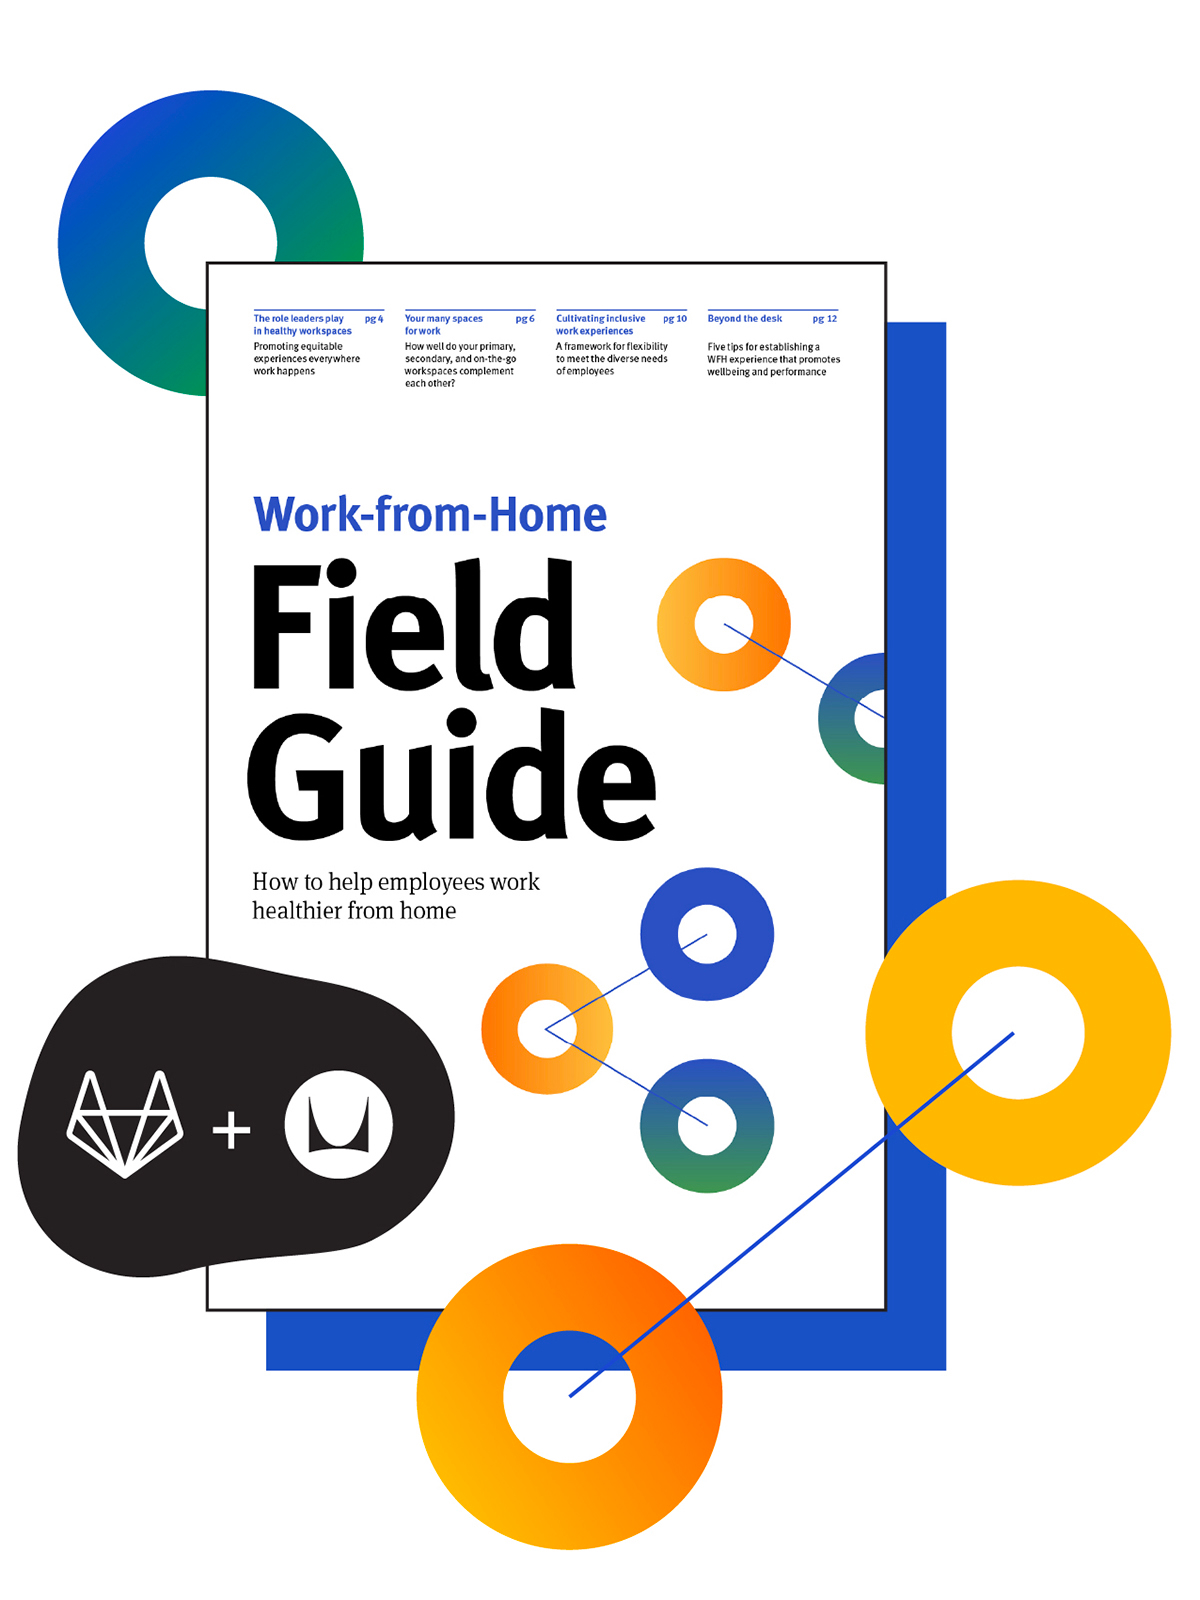 Page de couverture du guide pratique sur le travail à domicile, fruit de la collaboration entre les experts du télétravail de GitLab et Herman Miller.